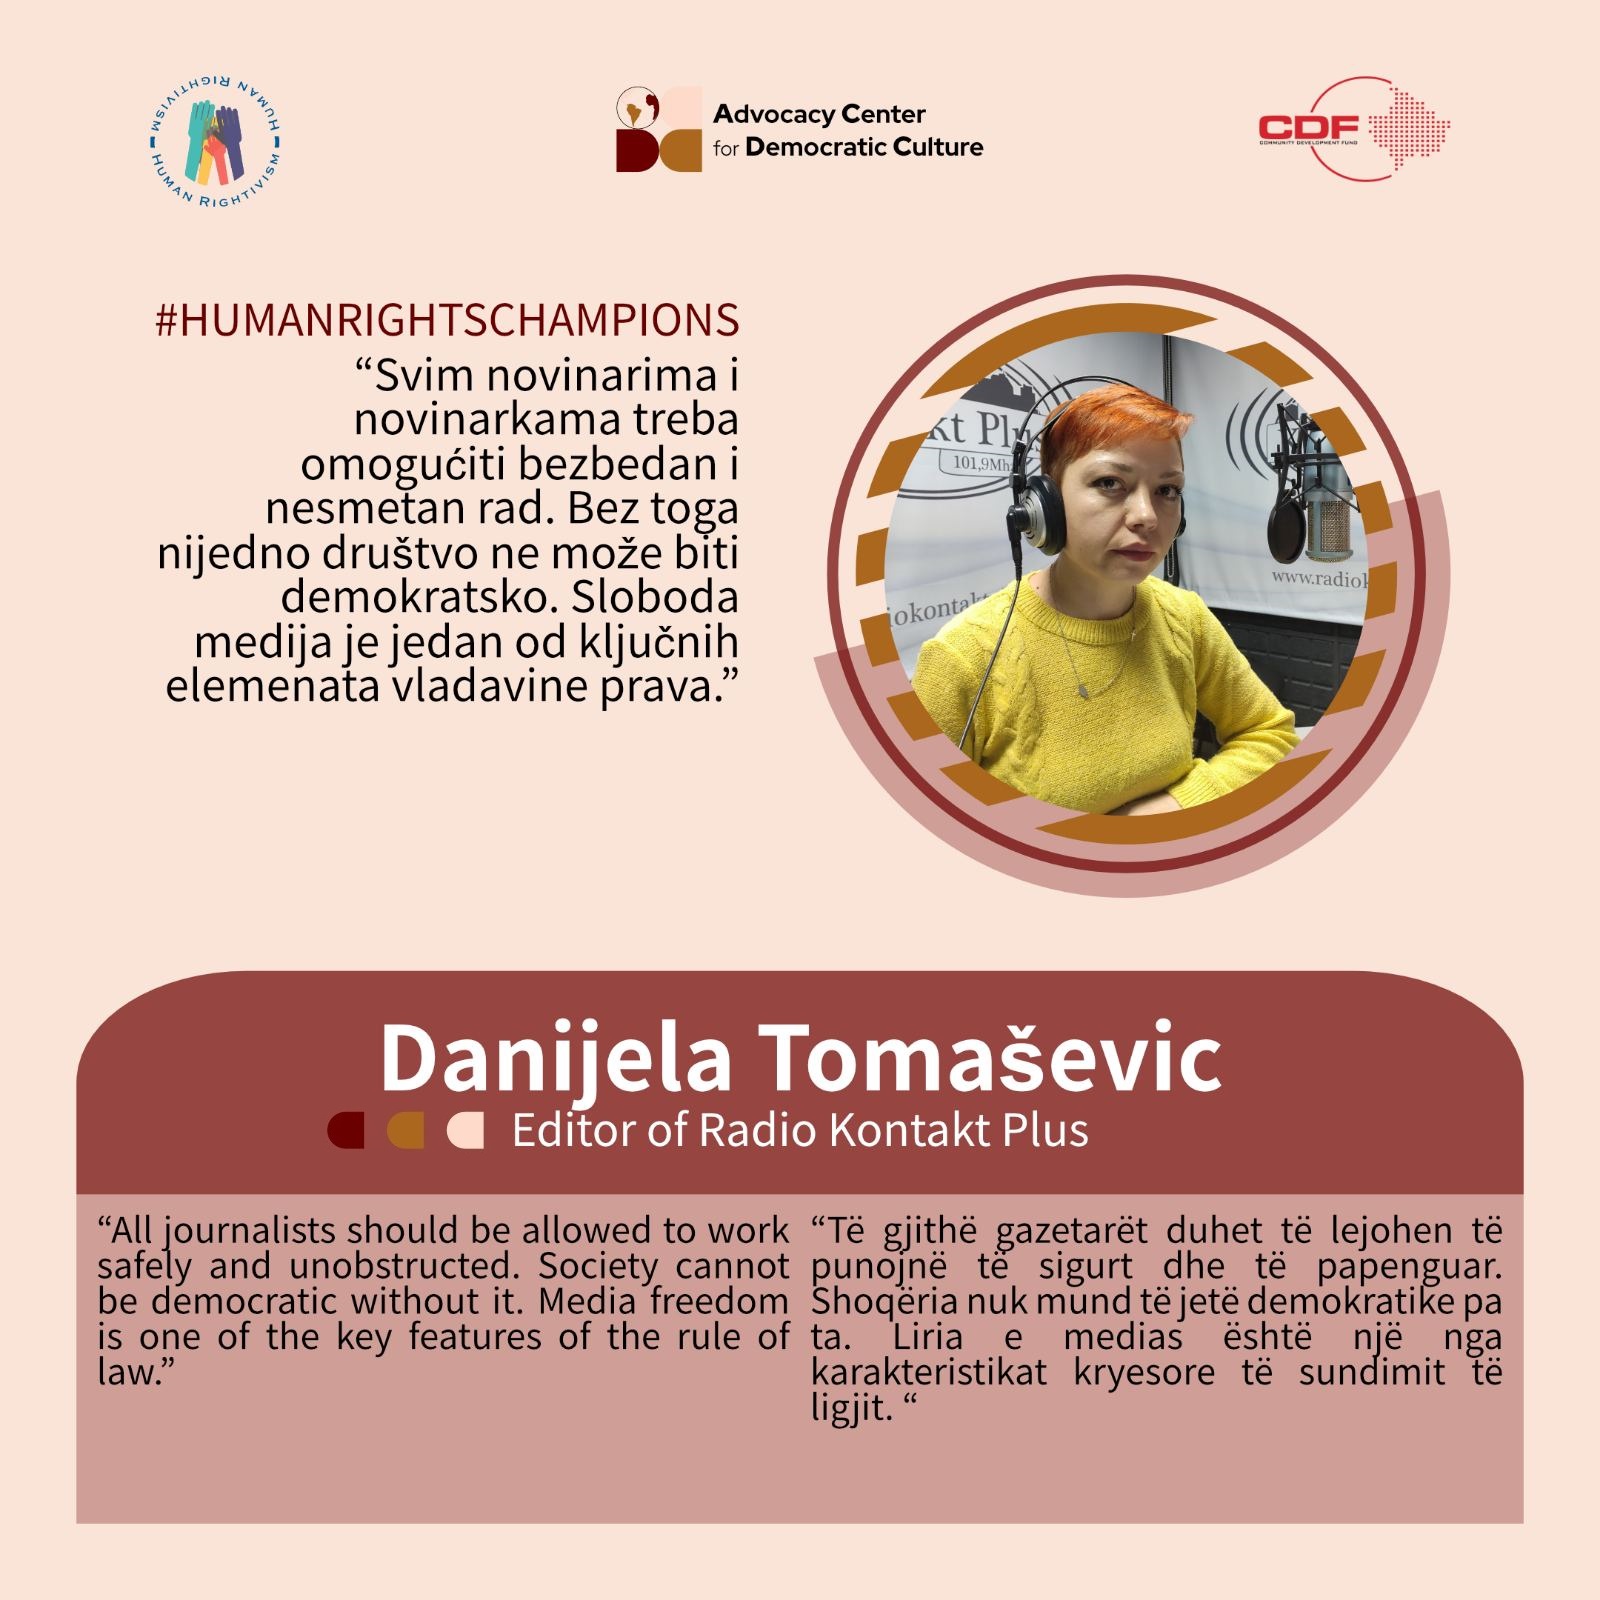 kampanja-promocije-ljudskih-prava-humanrightschampions-danijela-tomasevic